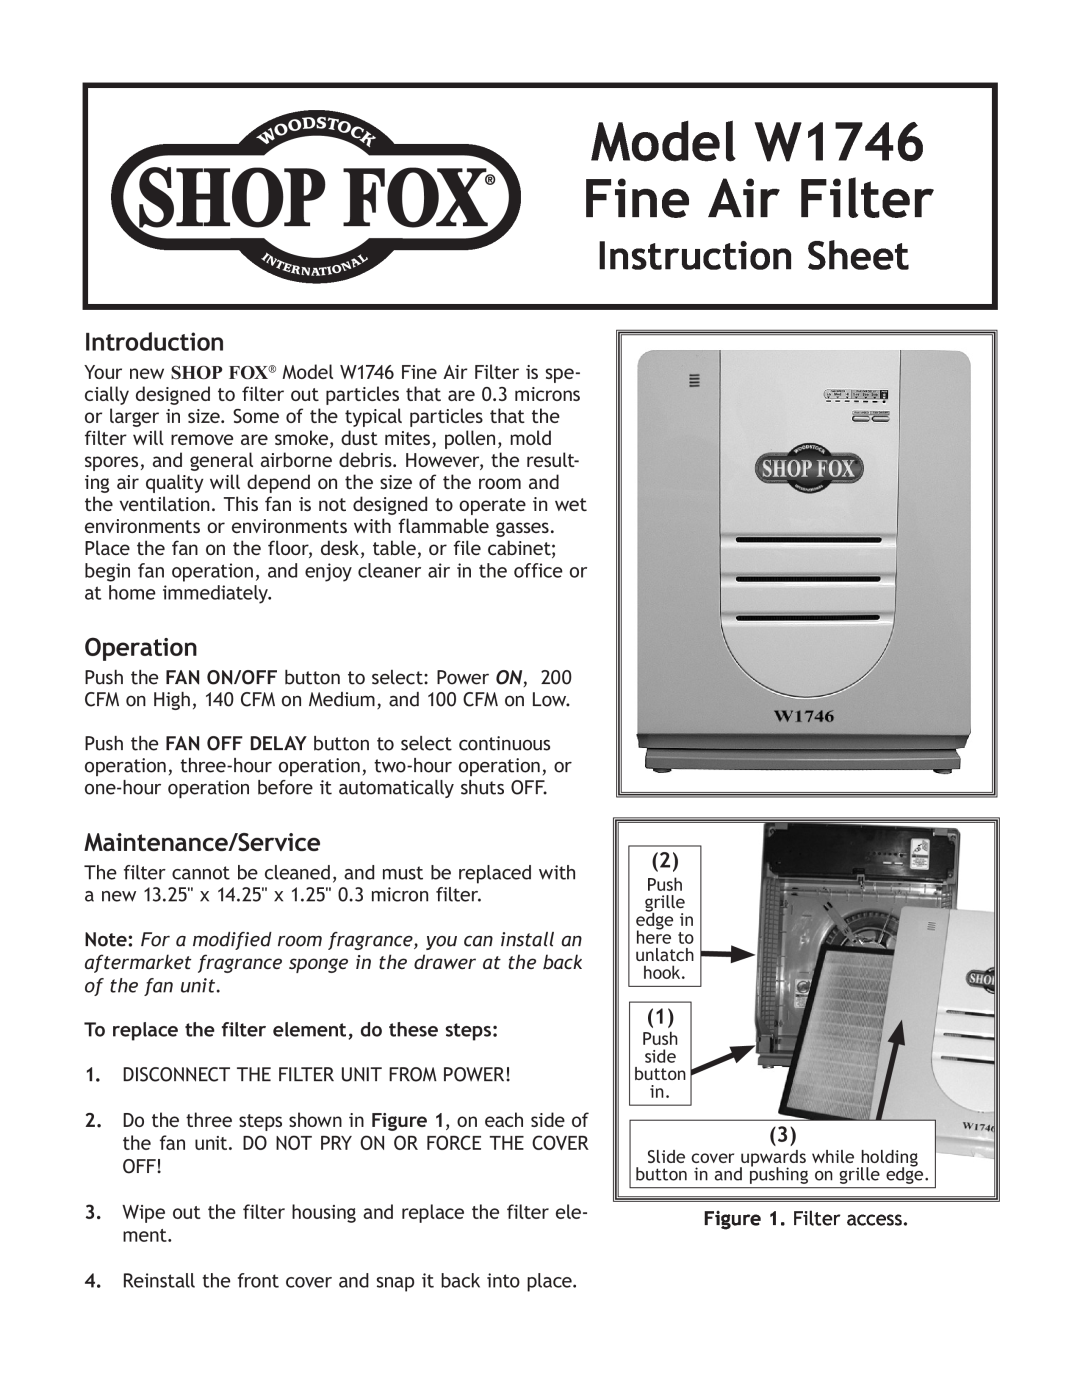 Woodstock instruction sheet Model W1746 Fine Air Filter, Instruction Sheet, Introduction, Operation 